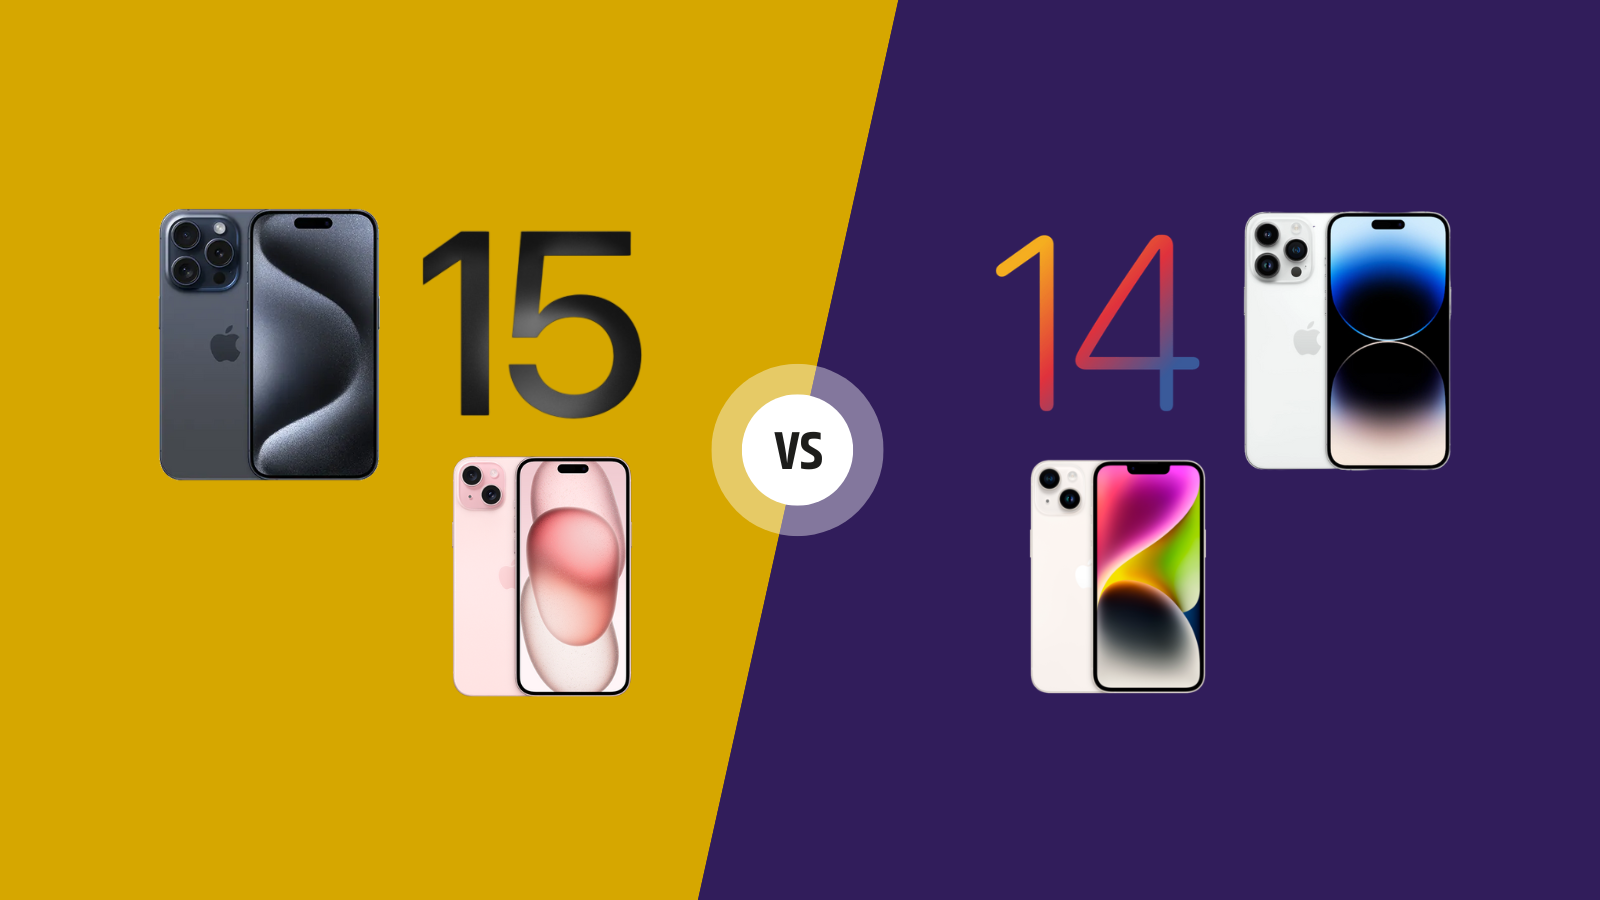 Iphone 15 vs iphone 14: confira as principais mudanças da nova geração. Ilha dinâmica e usb-c em todos os modelos, estrutura de titânio nos pros e muito mais. Confira o comparativo completo!